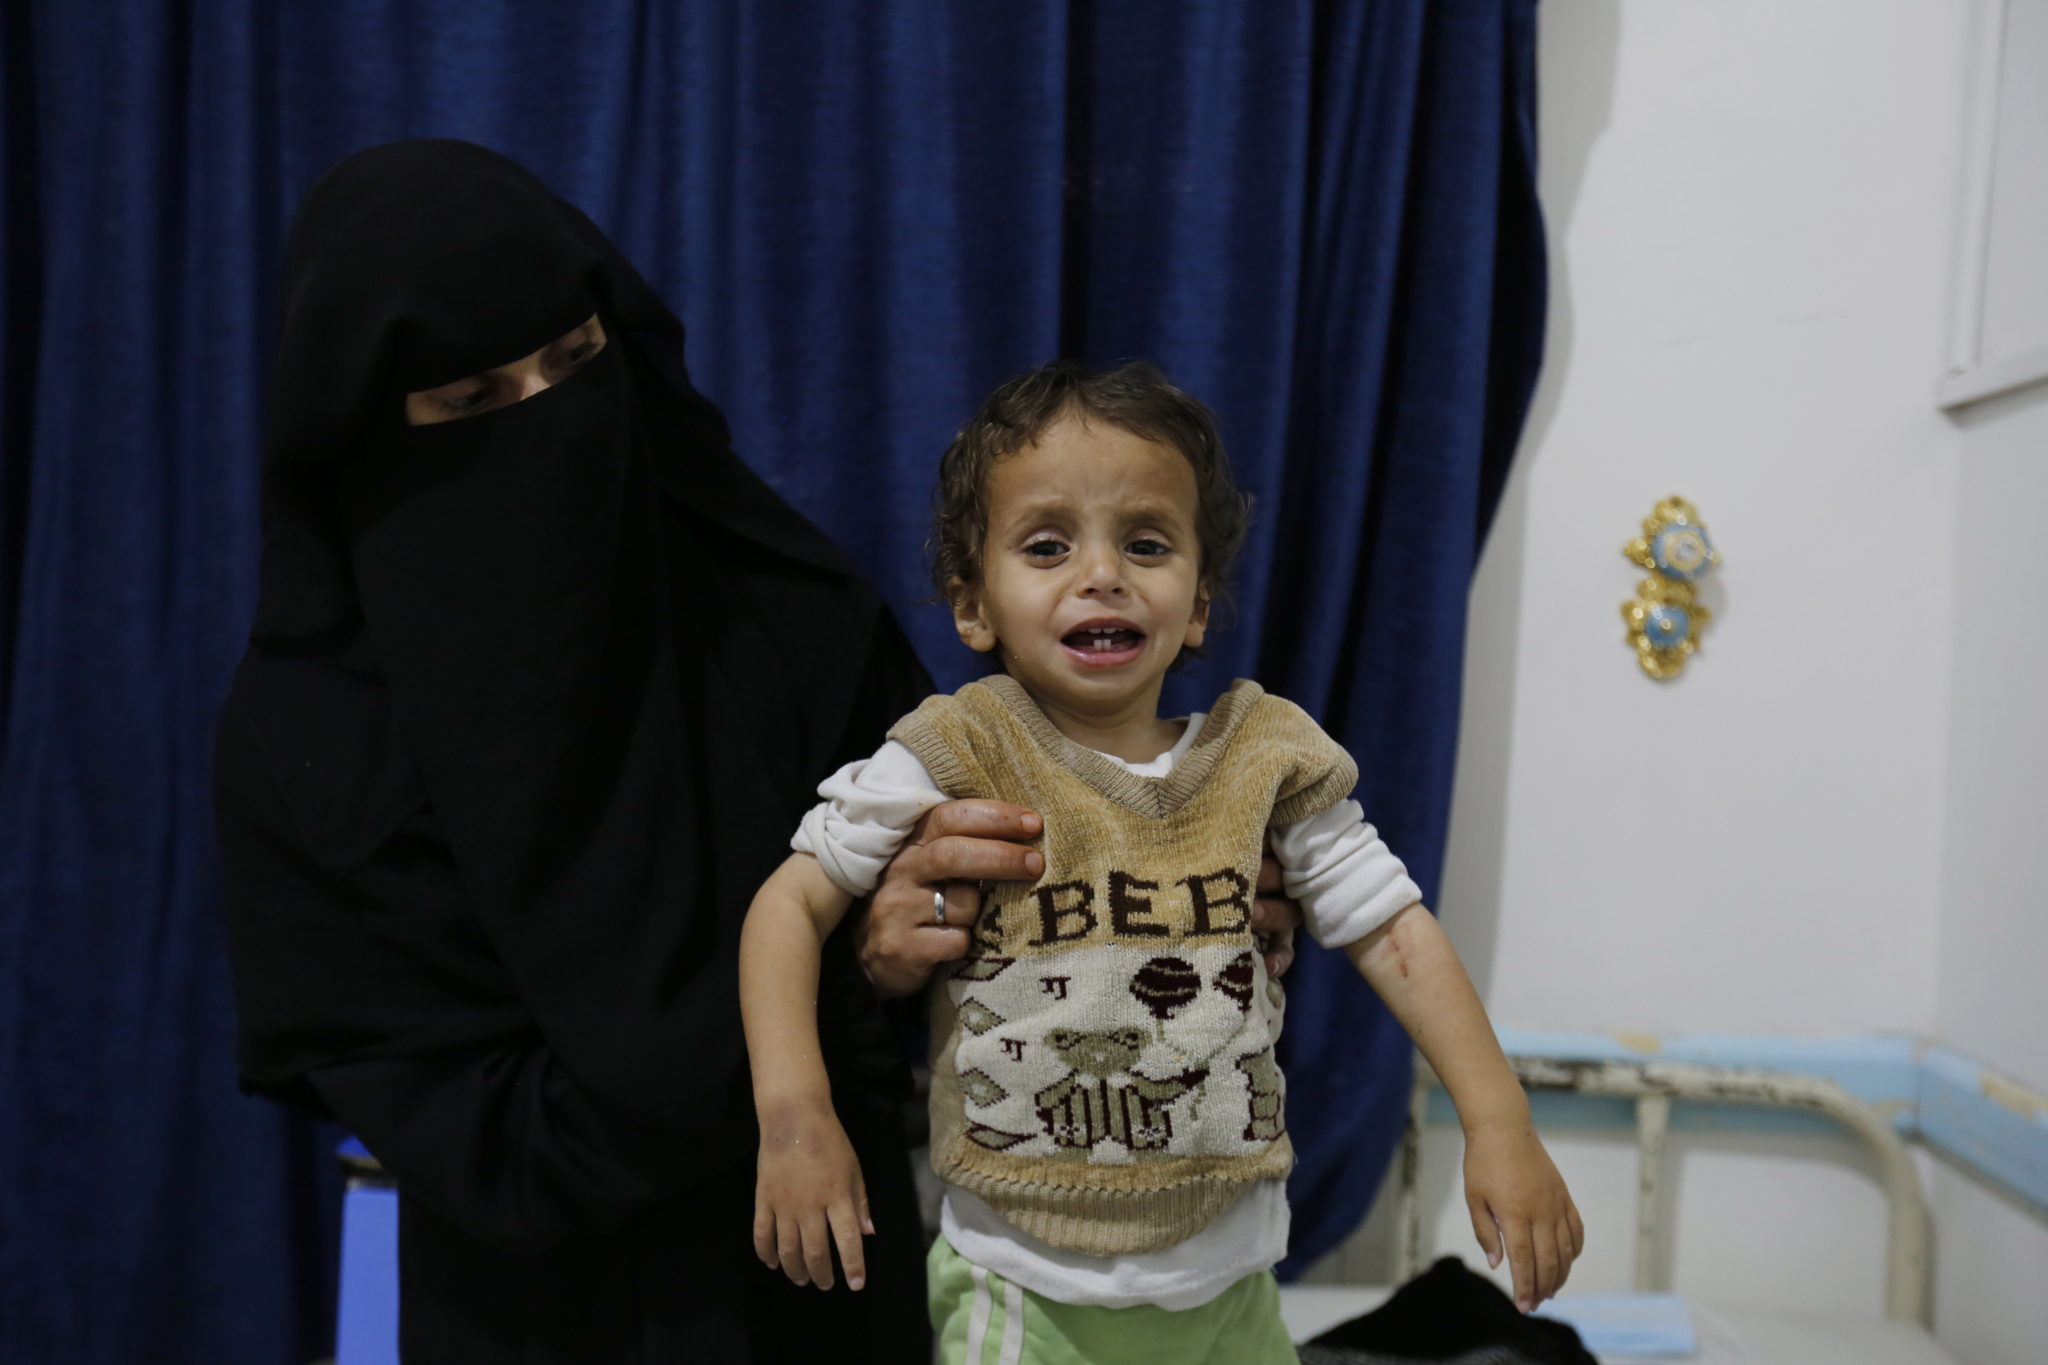 Jemen: chorzy na cholerę leczeni w prowizorycznym namiocie, fot. YAHYA ARHAB, PAP/EPA